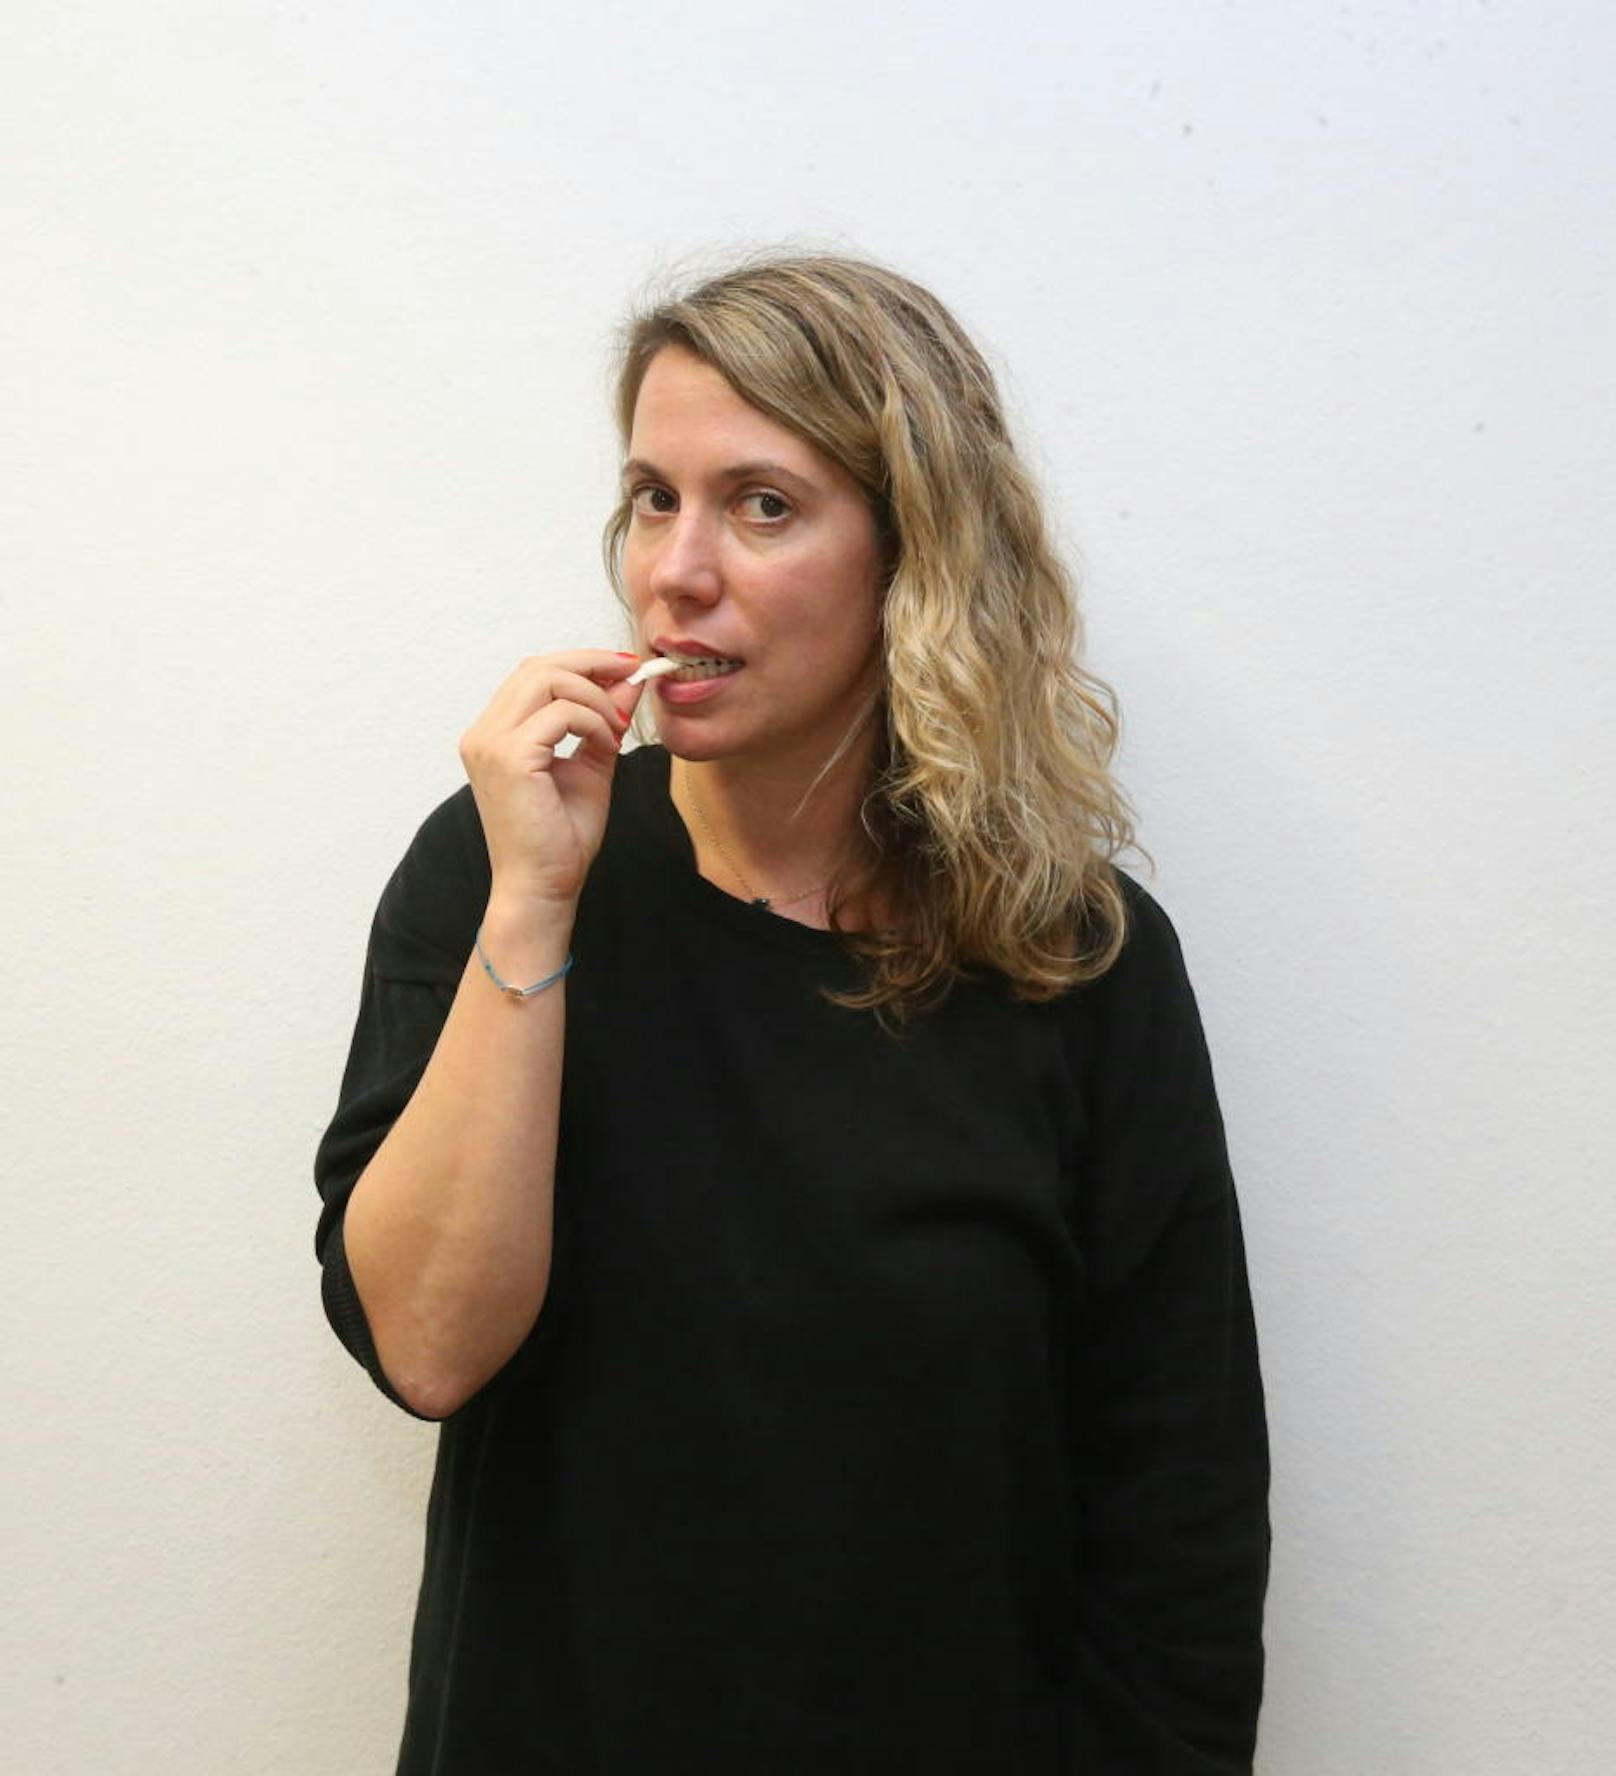 Oraltabak wie "Skruf" soll nun die herkömmliche Zigarette ersetzen. Für Nichtraucherin und "Heute"-Reporterin Sandra Kartik ist das neue Nikotin zum Lutschen kein Ersatz, für immer mehr Österreicher aber schon.